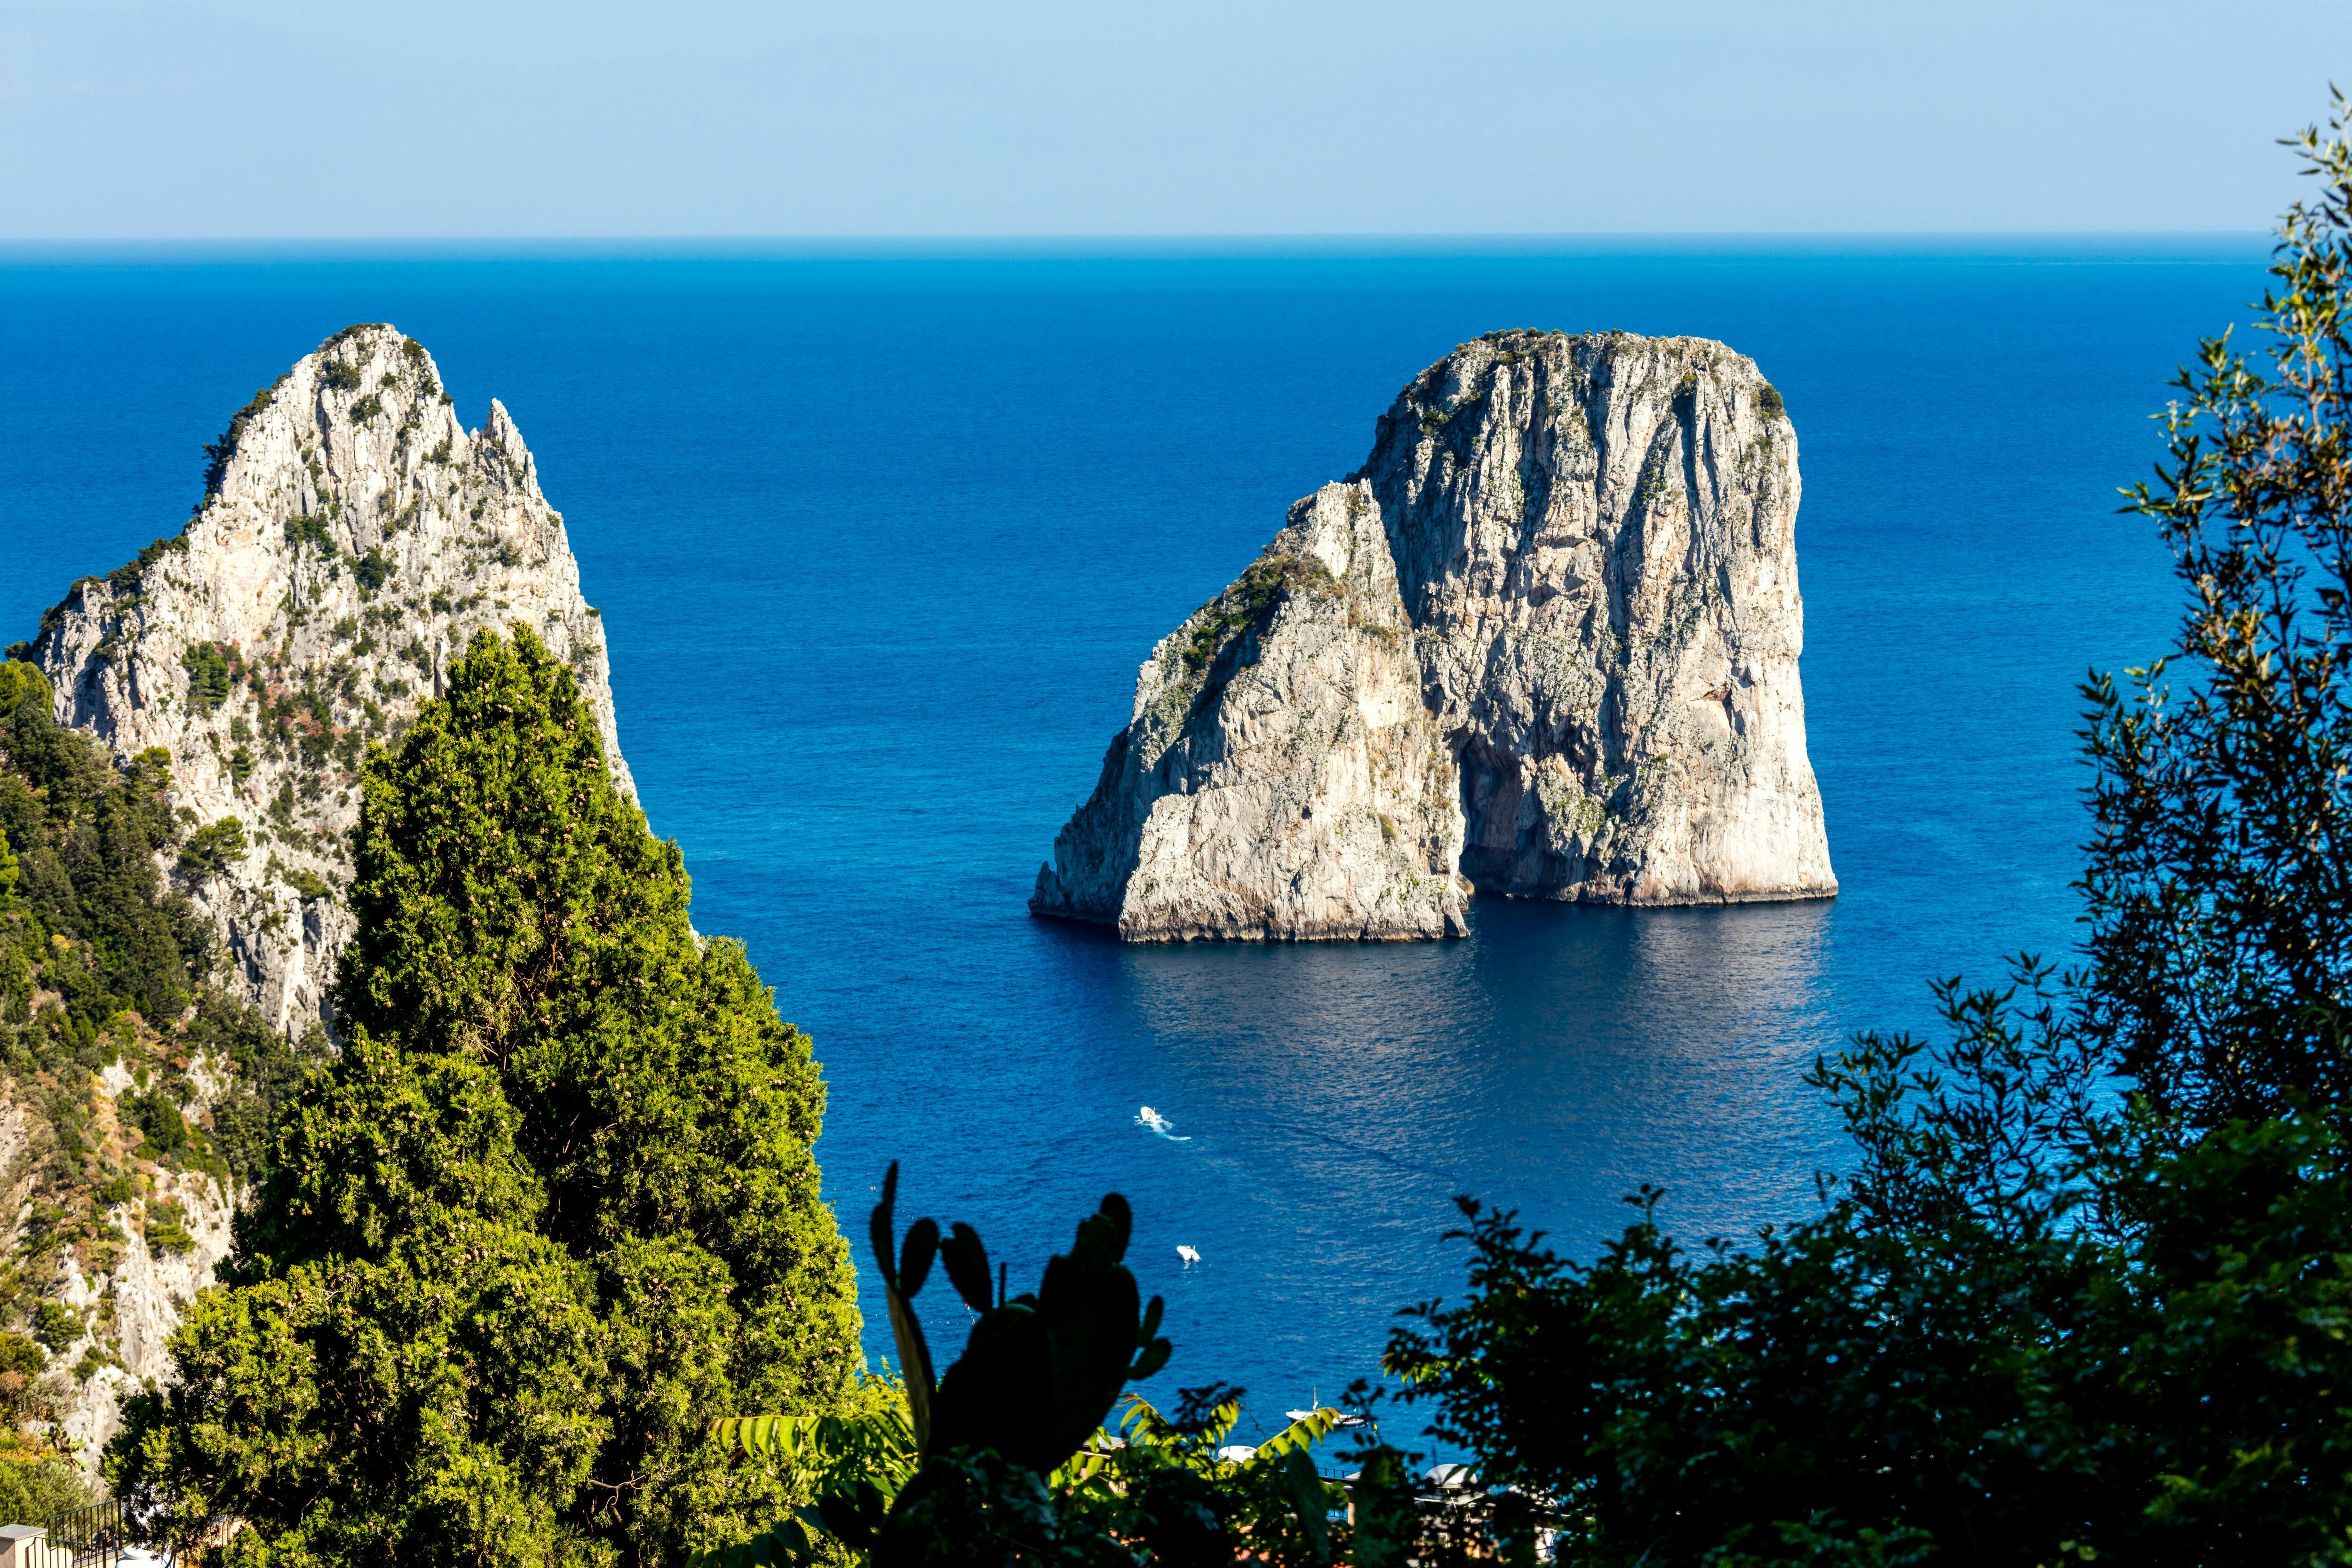 Selezione di Capri e Anacapri con visita guidata a piedi